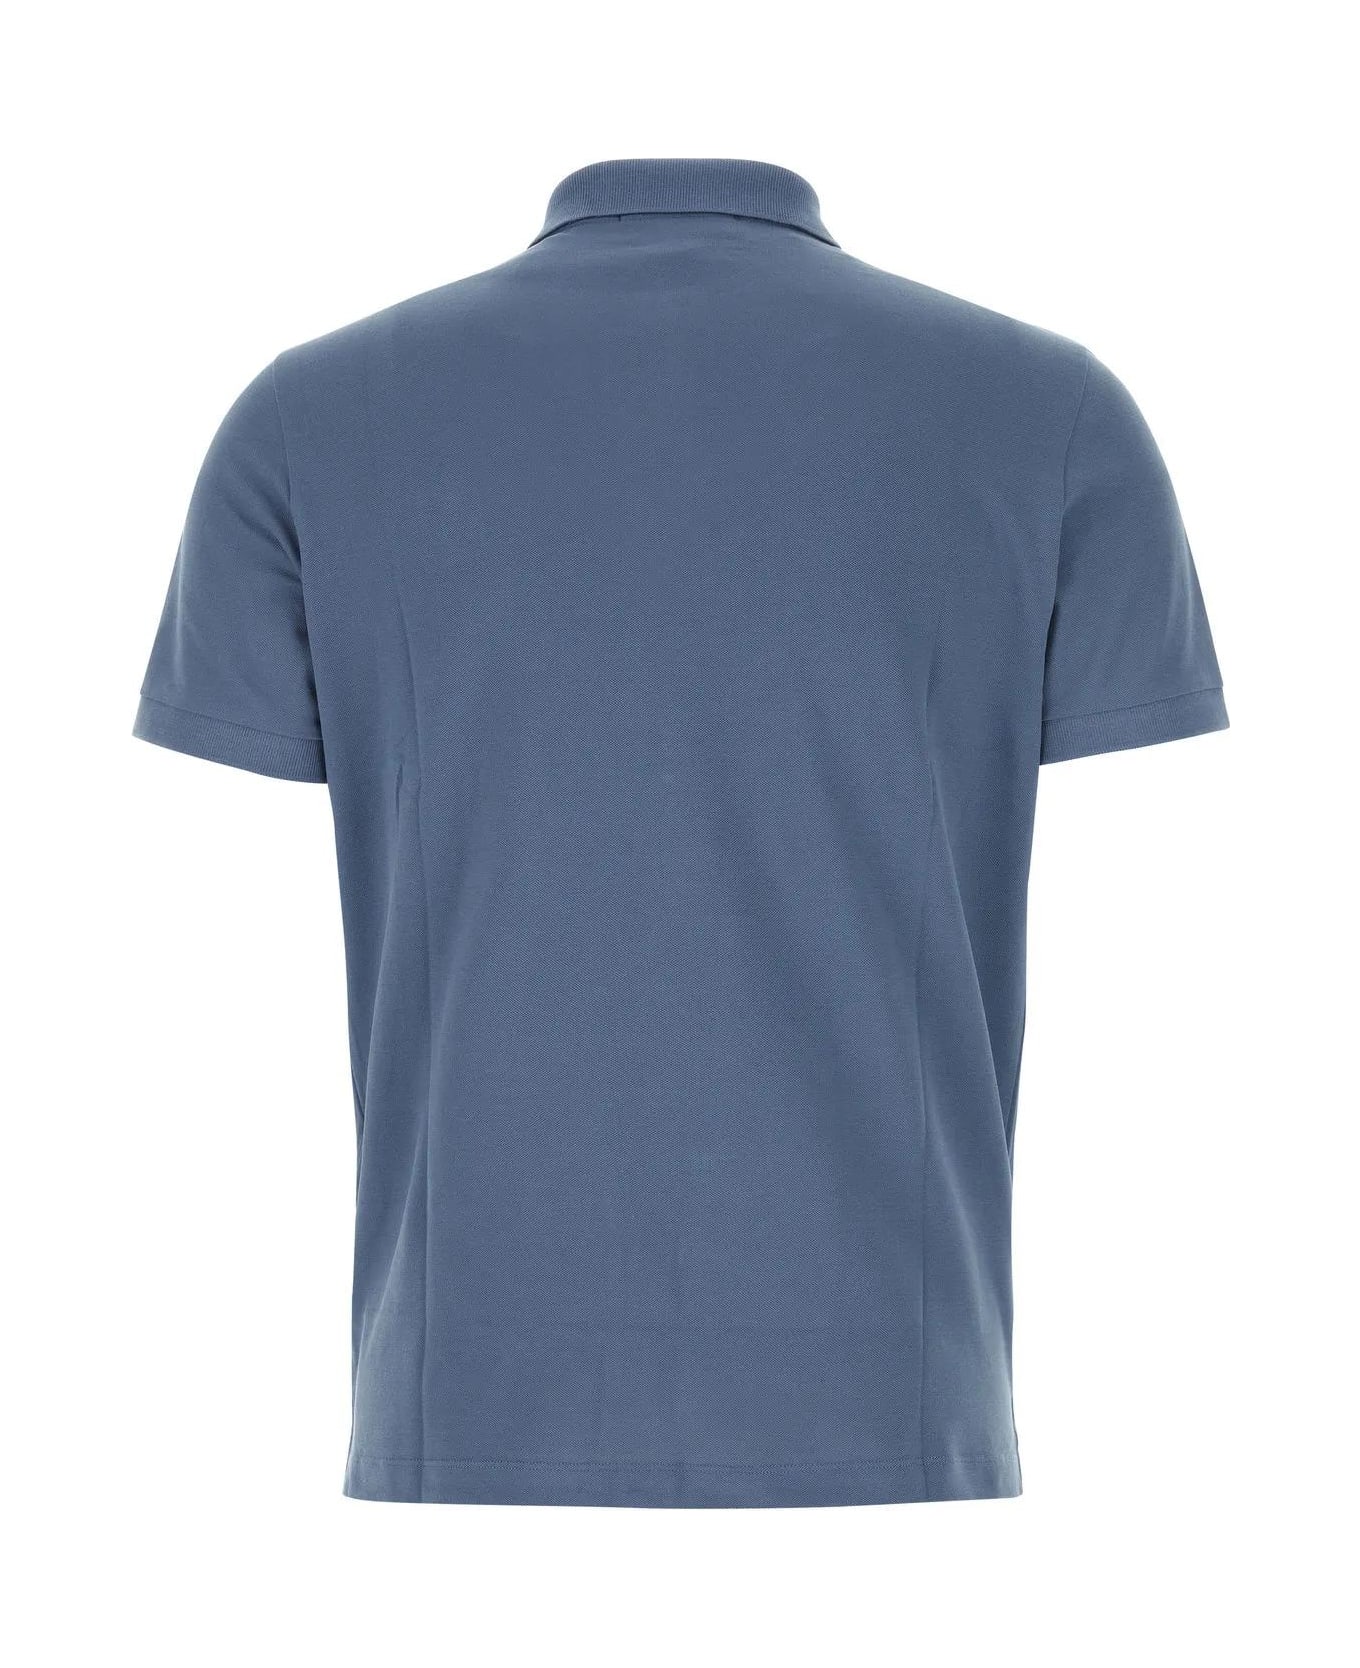 Stone Island Air Force Blue Stretch Piquet Polo Shirt - Blue シャツ